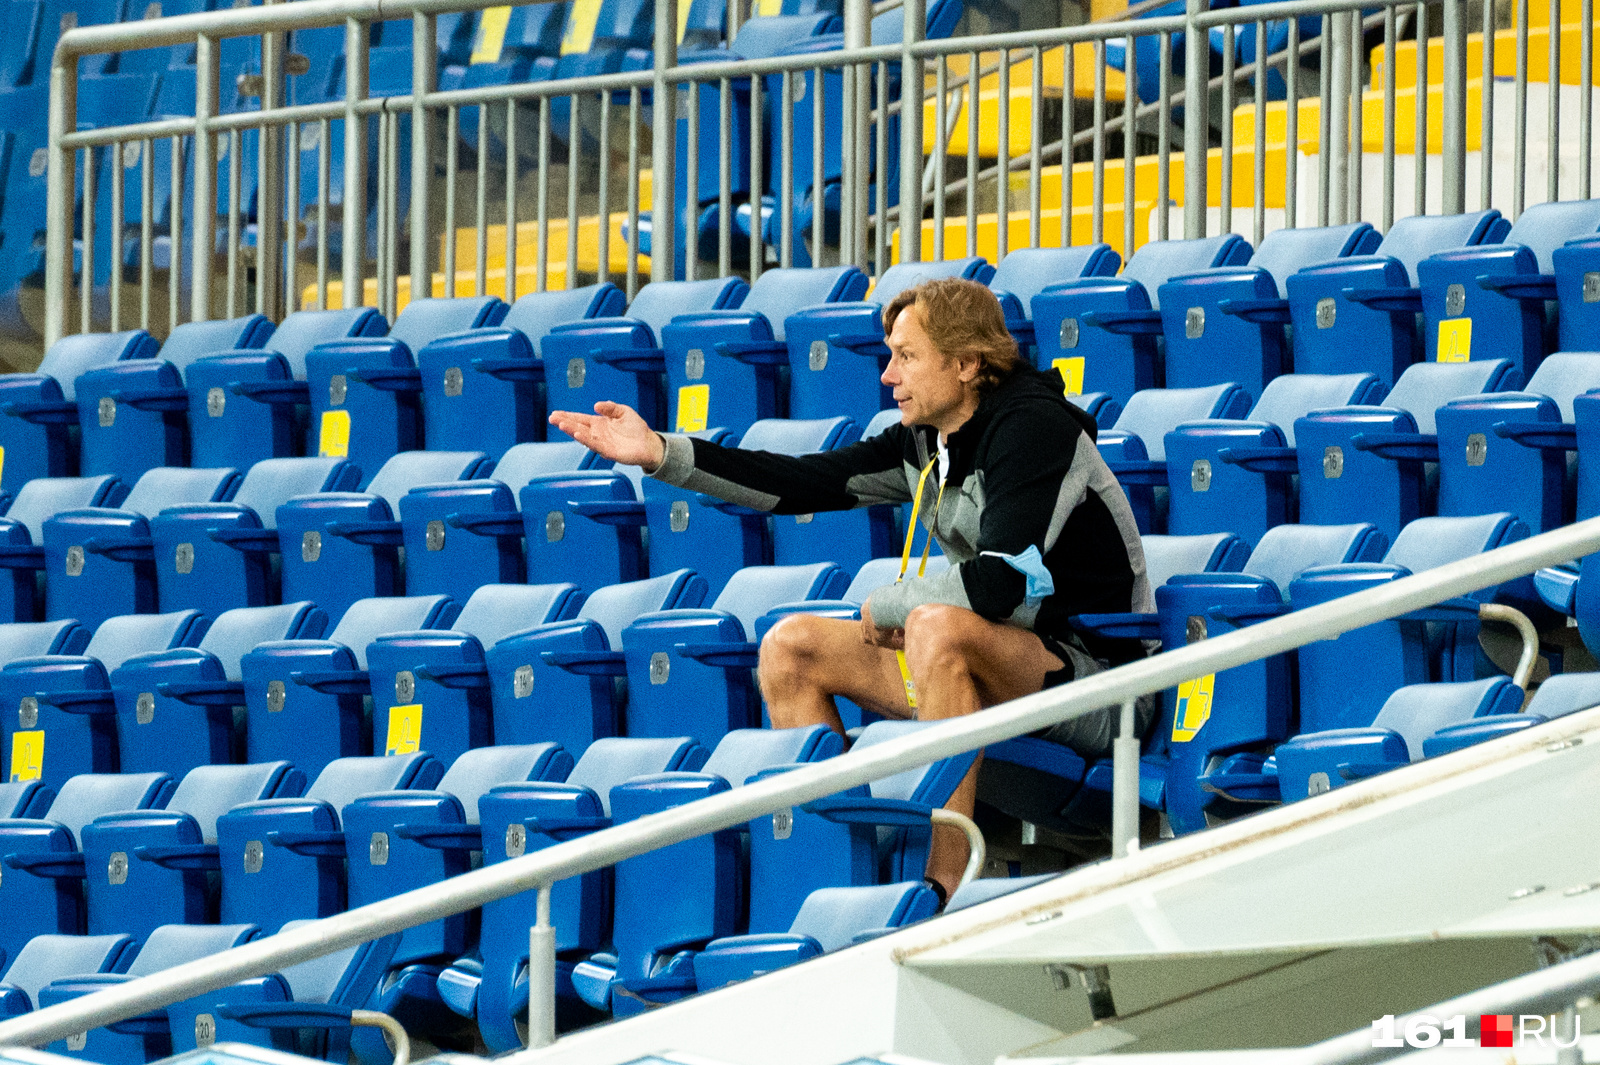 23 июля о назначении Карпина объявили по ходу матча «Ростов» — «Динамо», за которым дисквалифицированный тренер наблюдал с трибуны